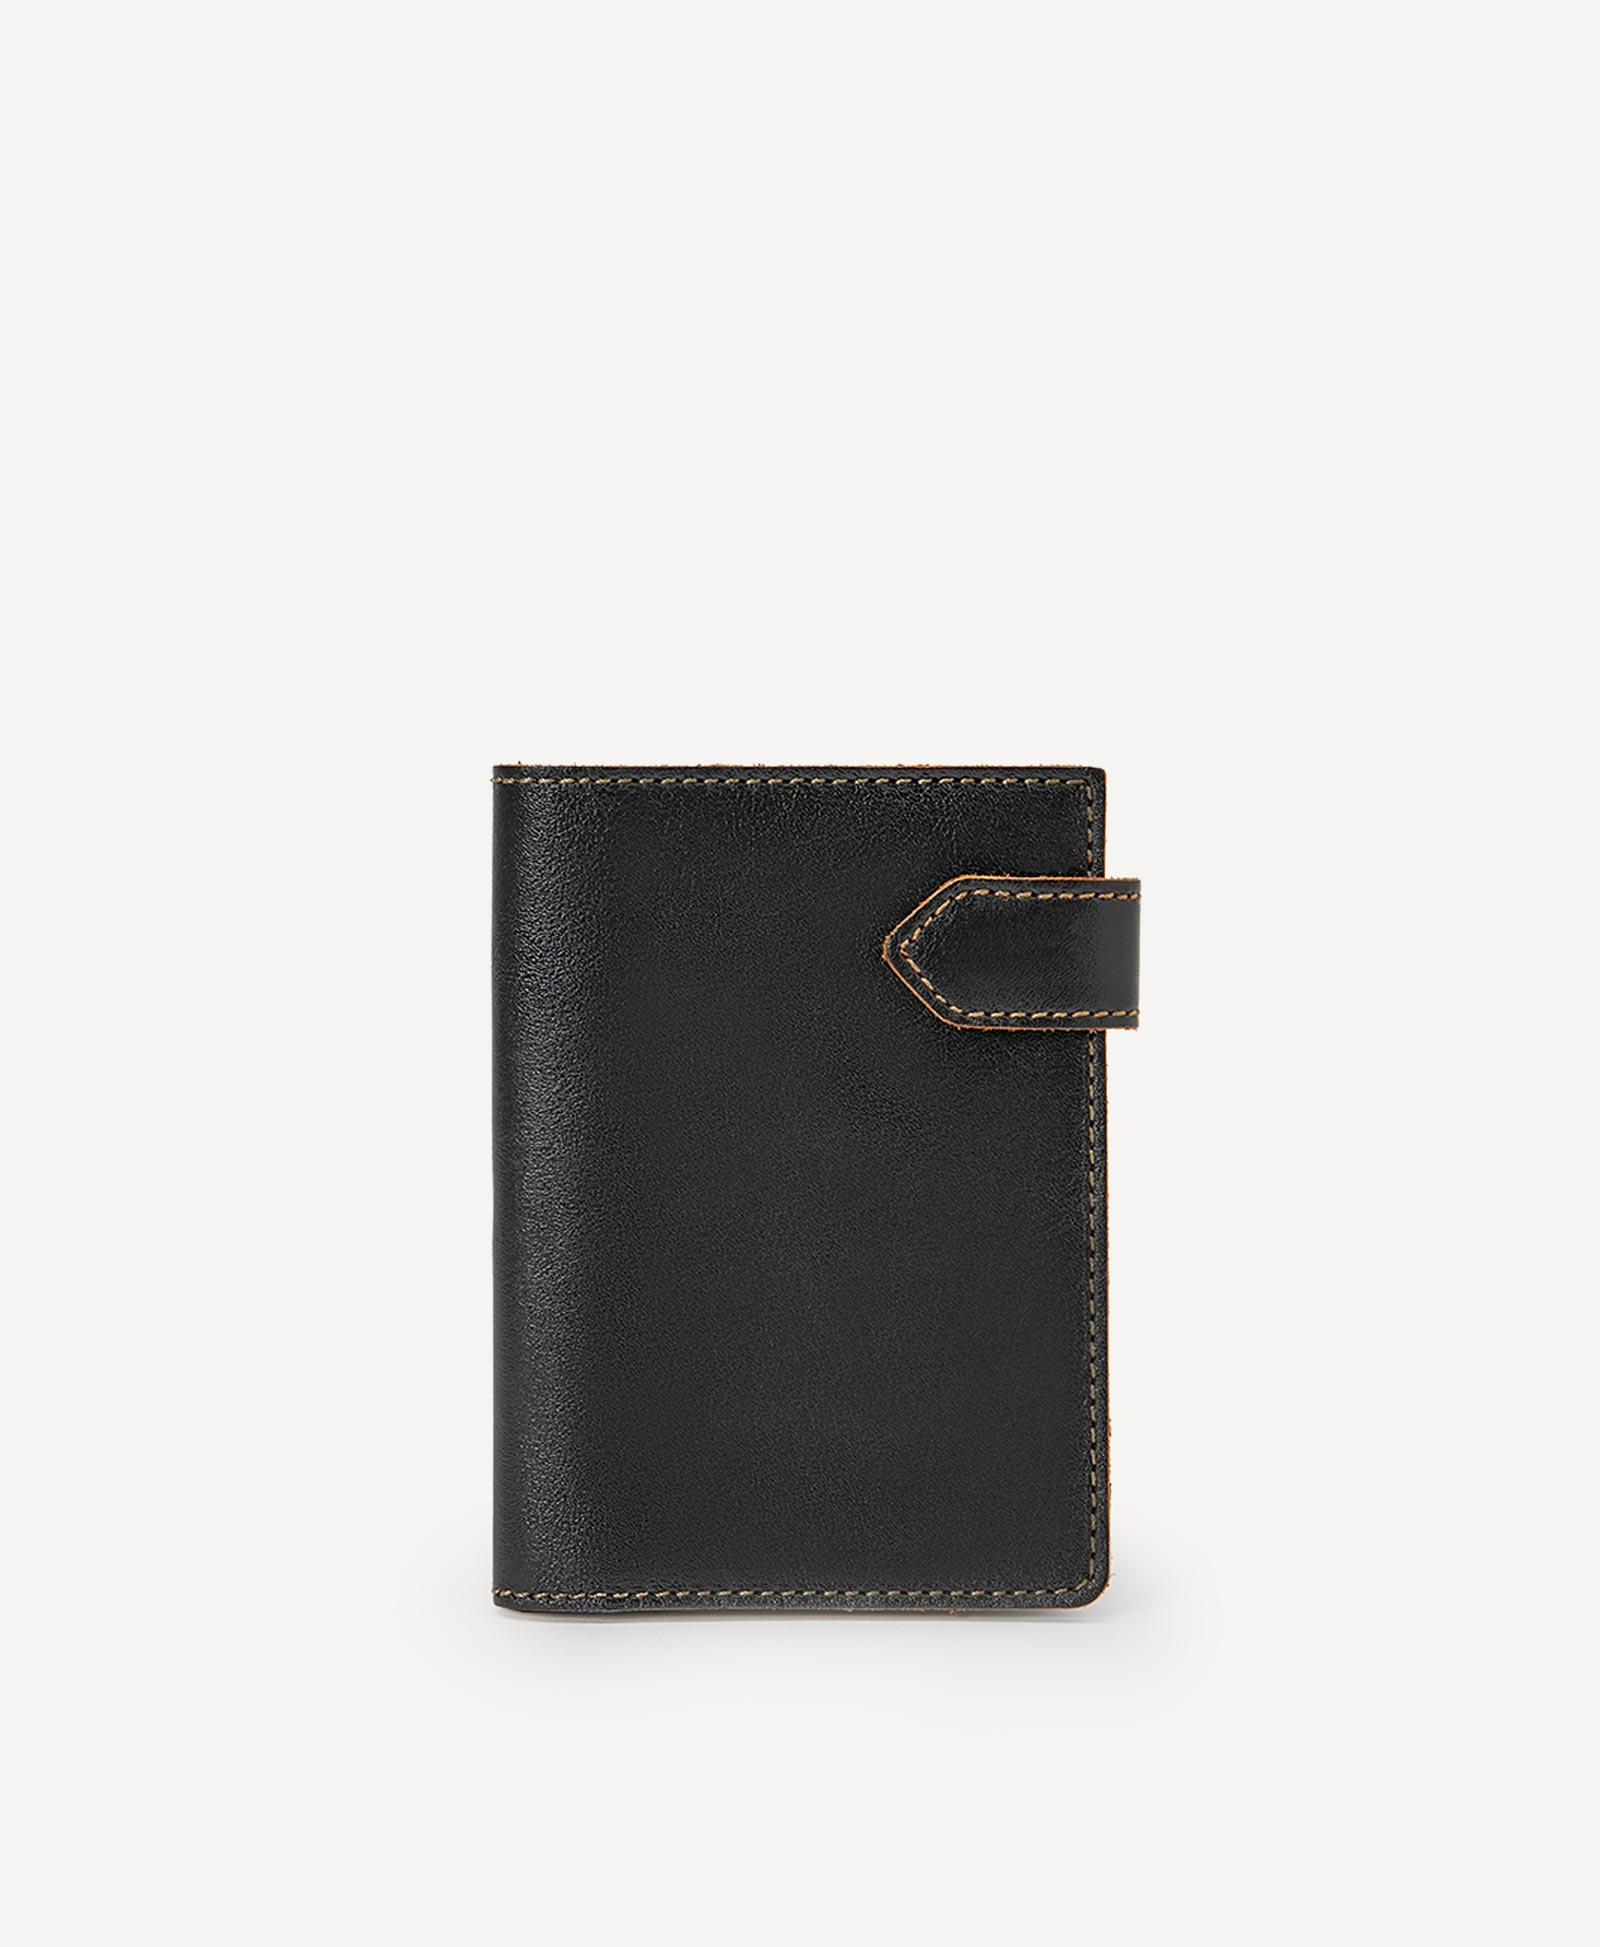 Бумажник водителя с двумя карманами бумажник водителя бвл5л 7 black натуральная кожа nissan в коробке автостоп